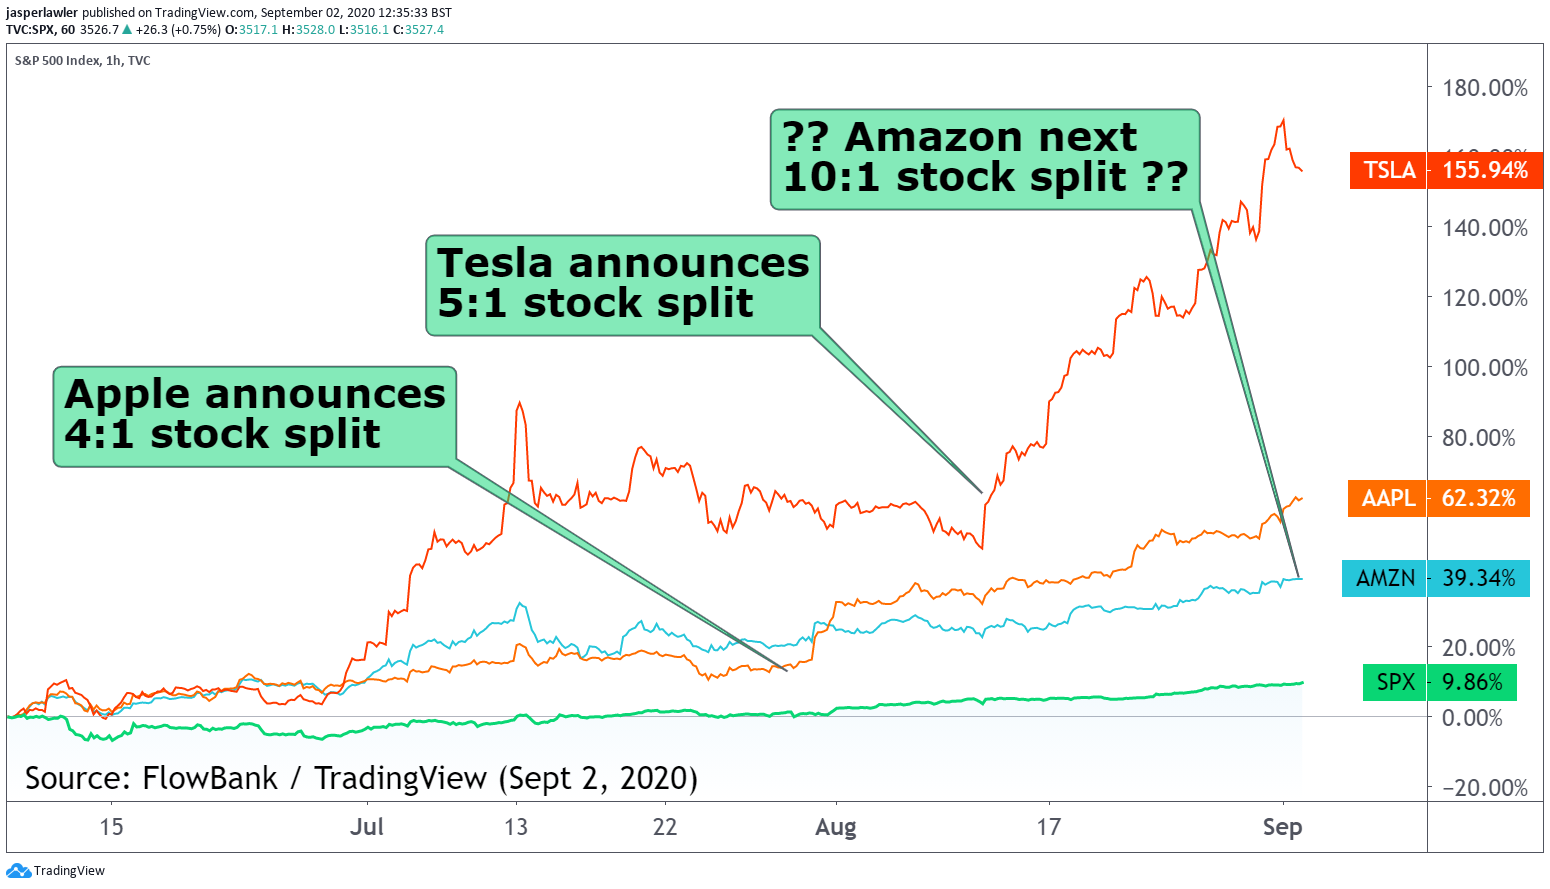 Amazon next for a stock split